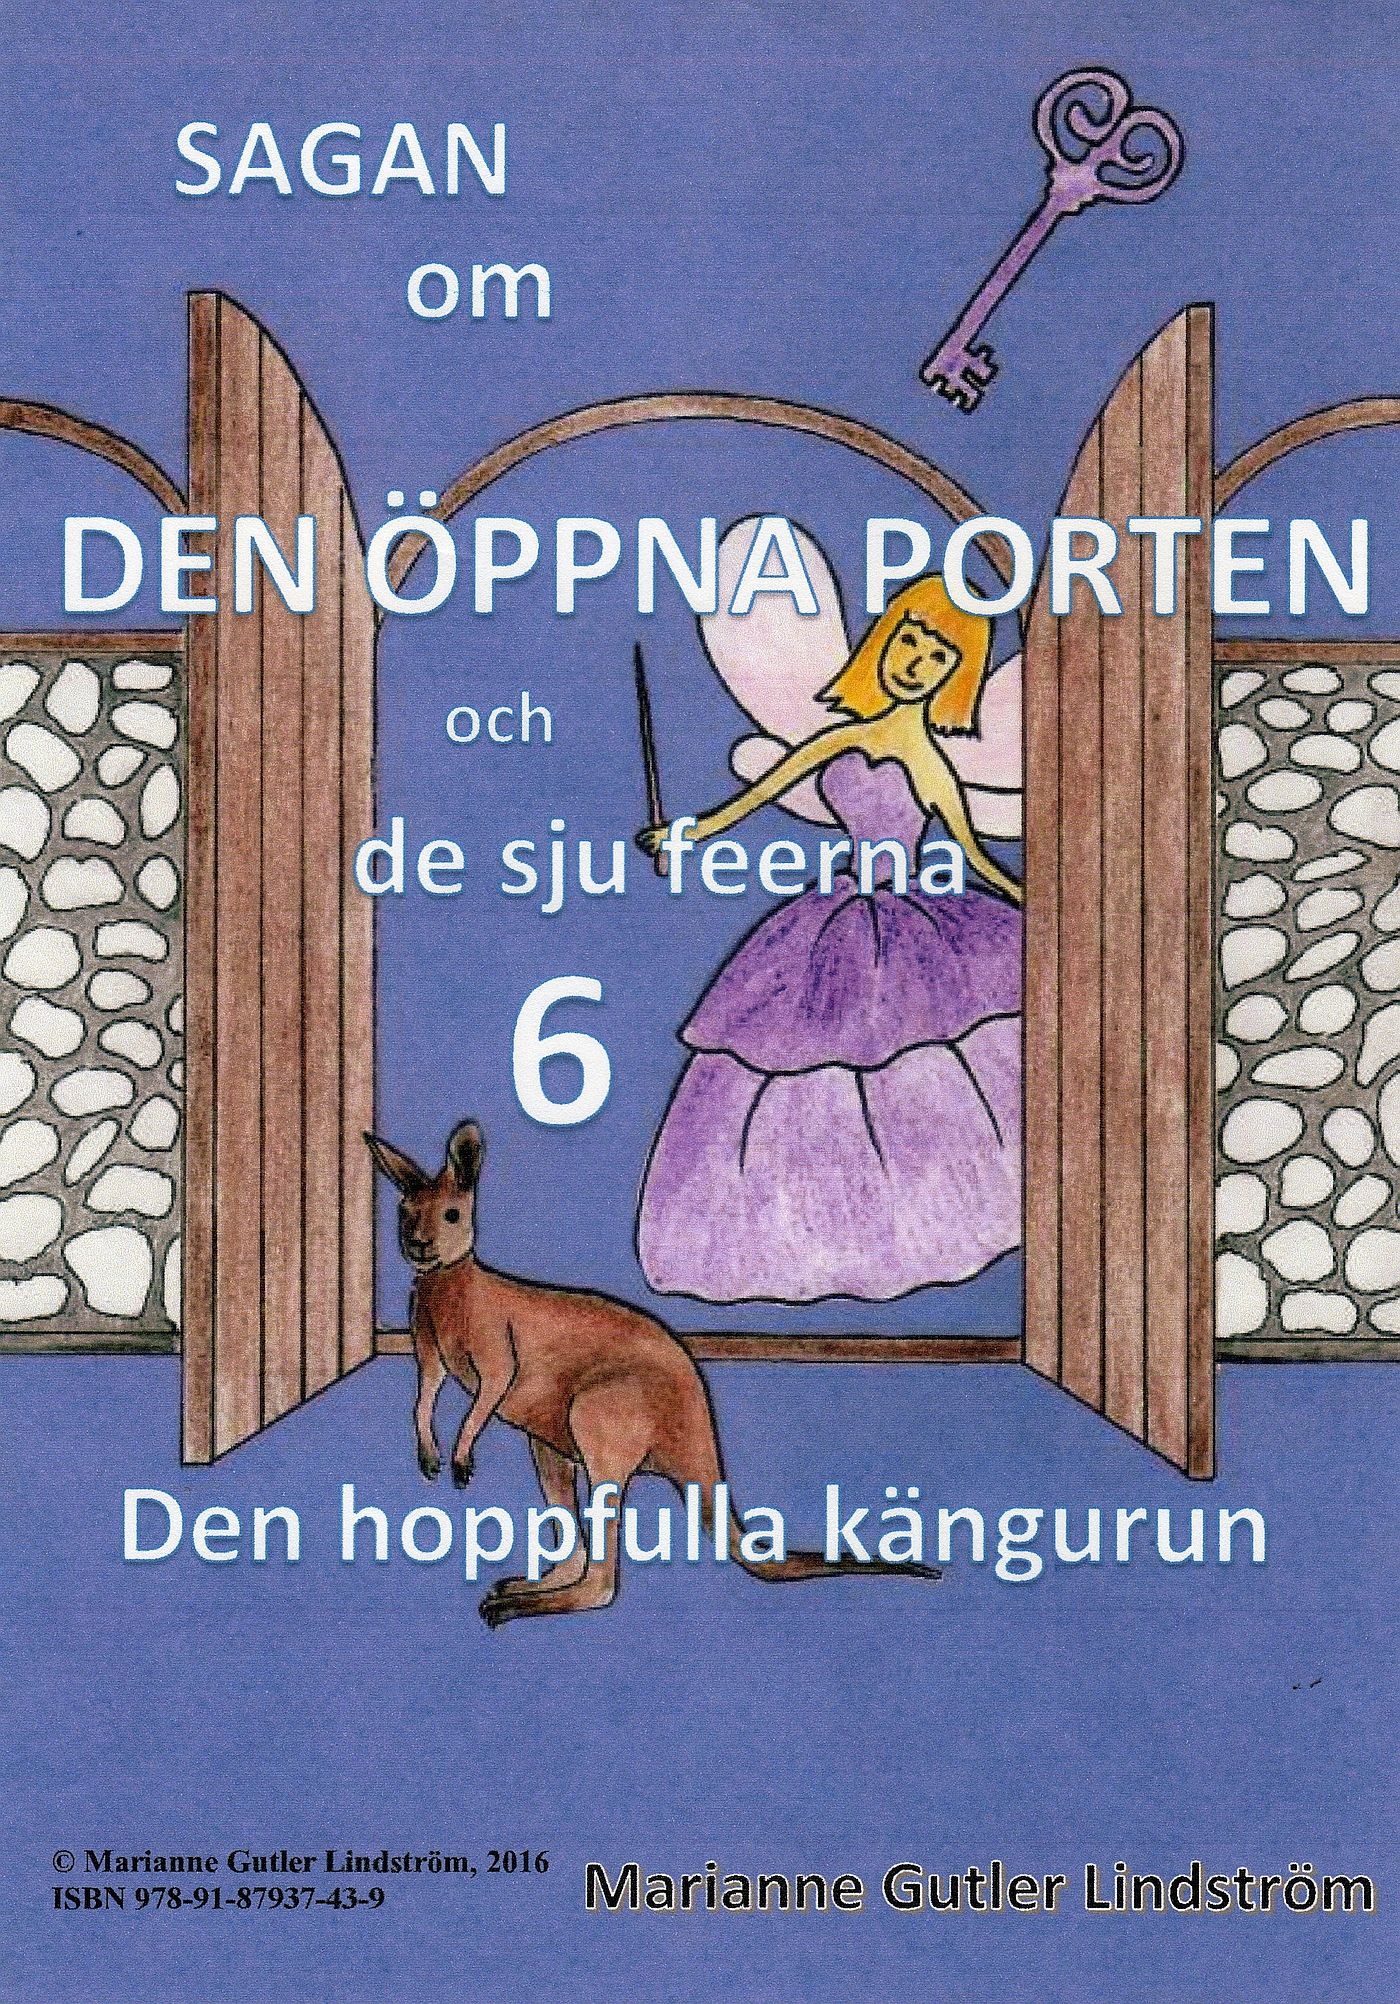 Sagan om den öppna porten 6. Den hoppfulla kängurun, eBook by Marianne Gutler Lindström